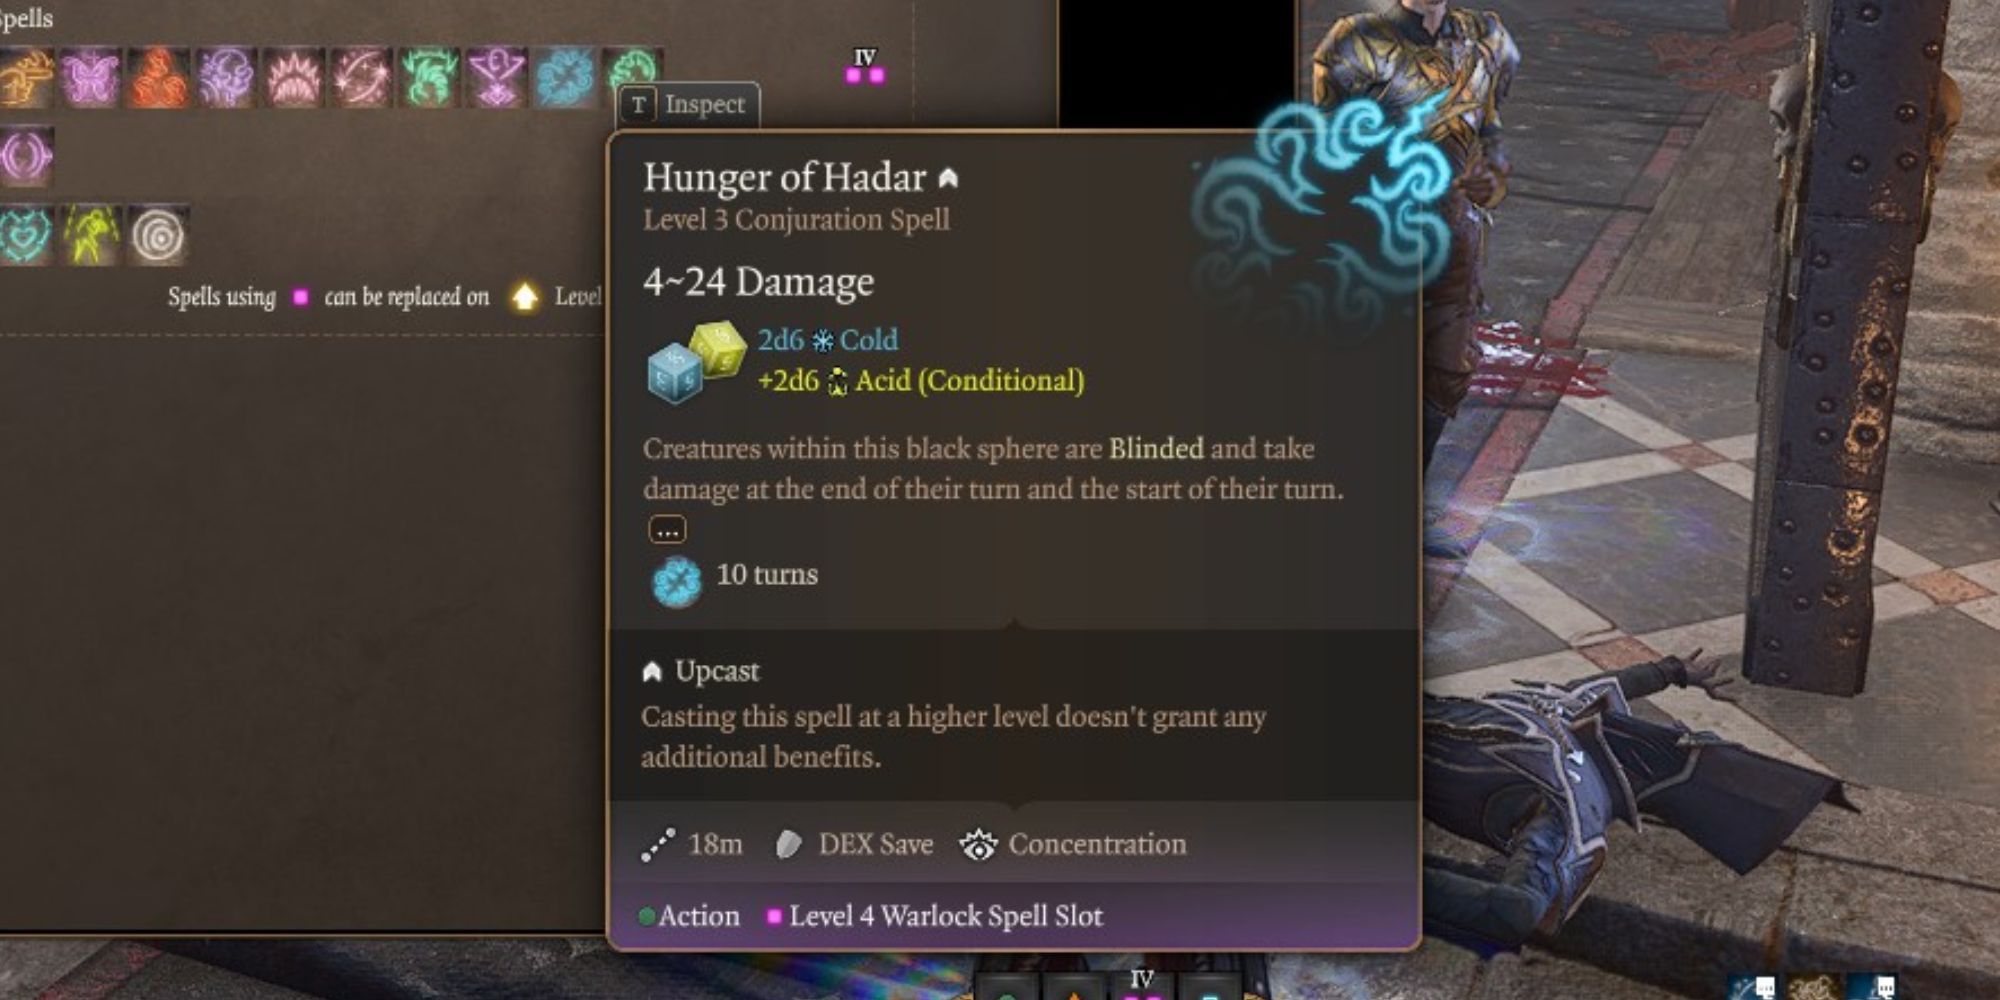 The Hunger Of Hadar spell in Baldur's Gate 3